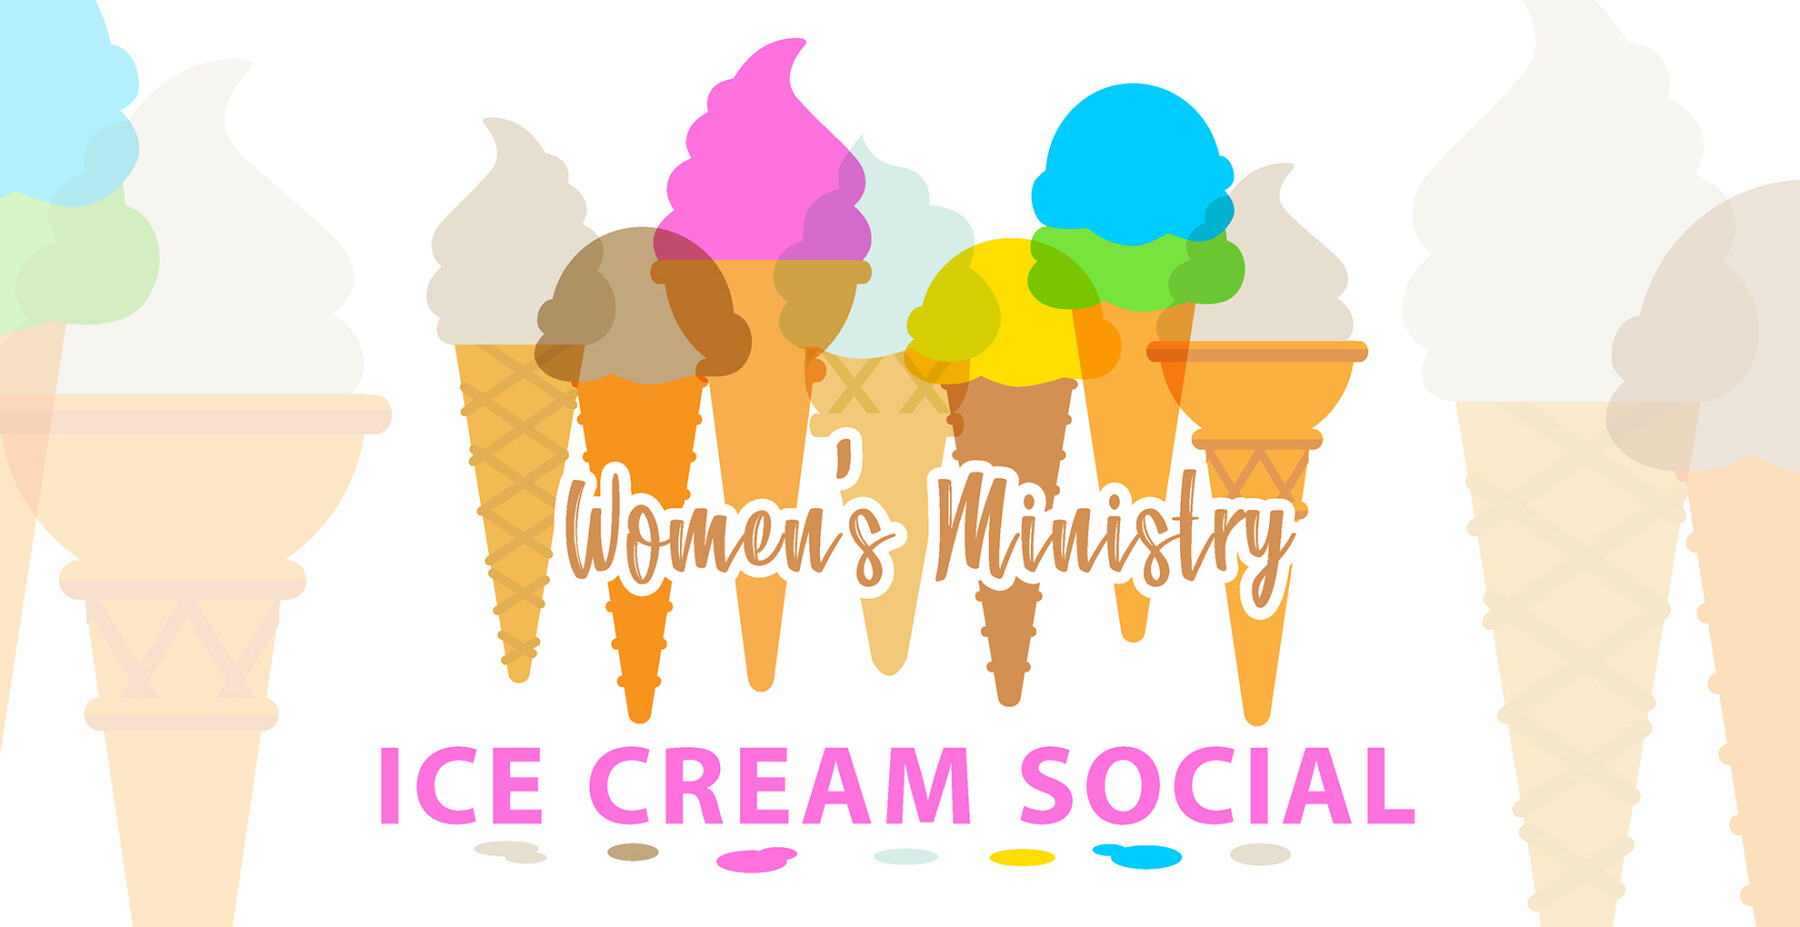 Women's Ice Cream Social